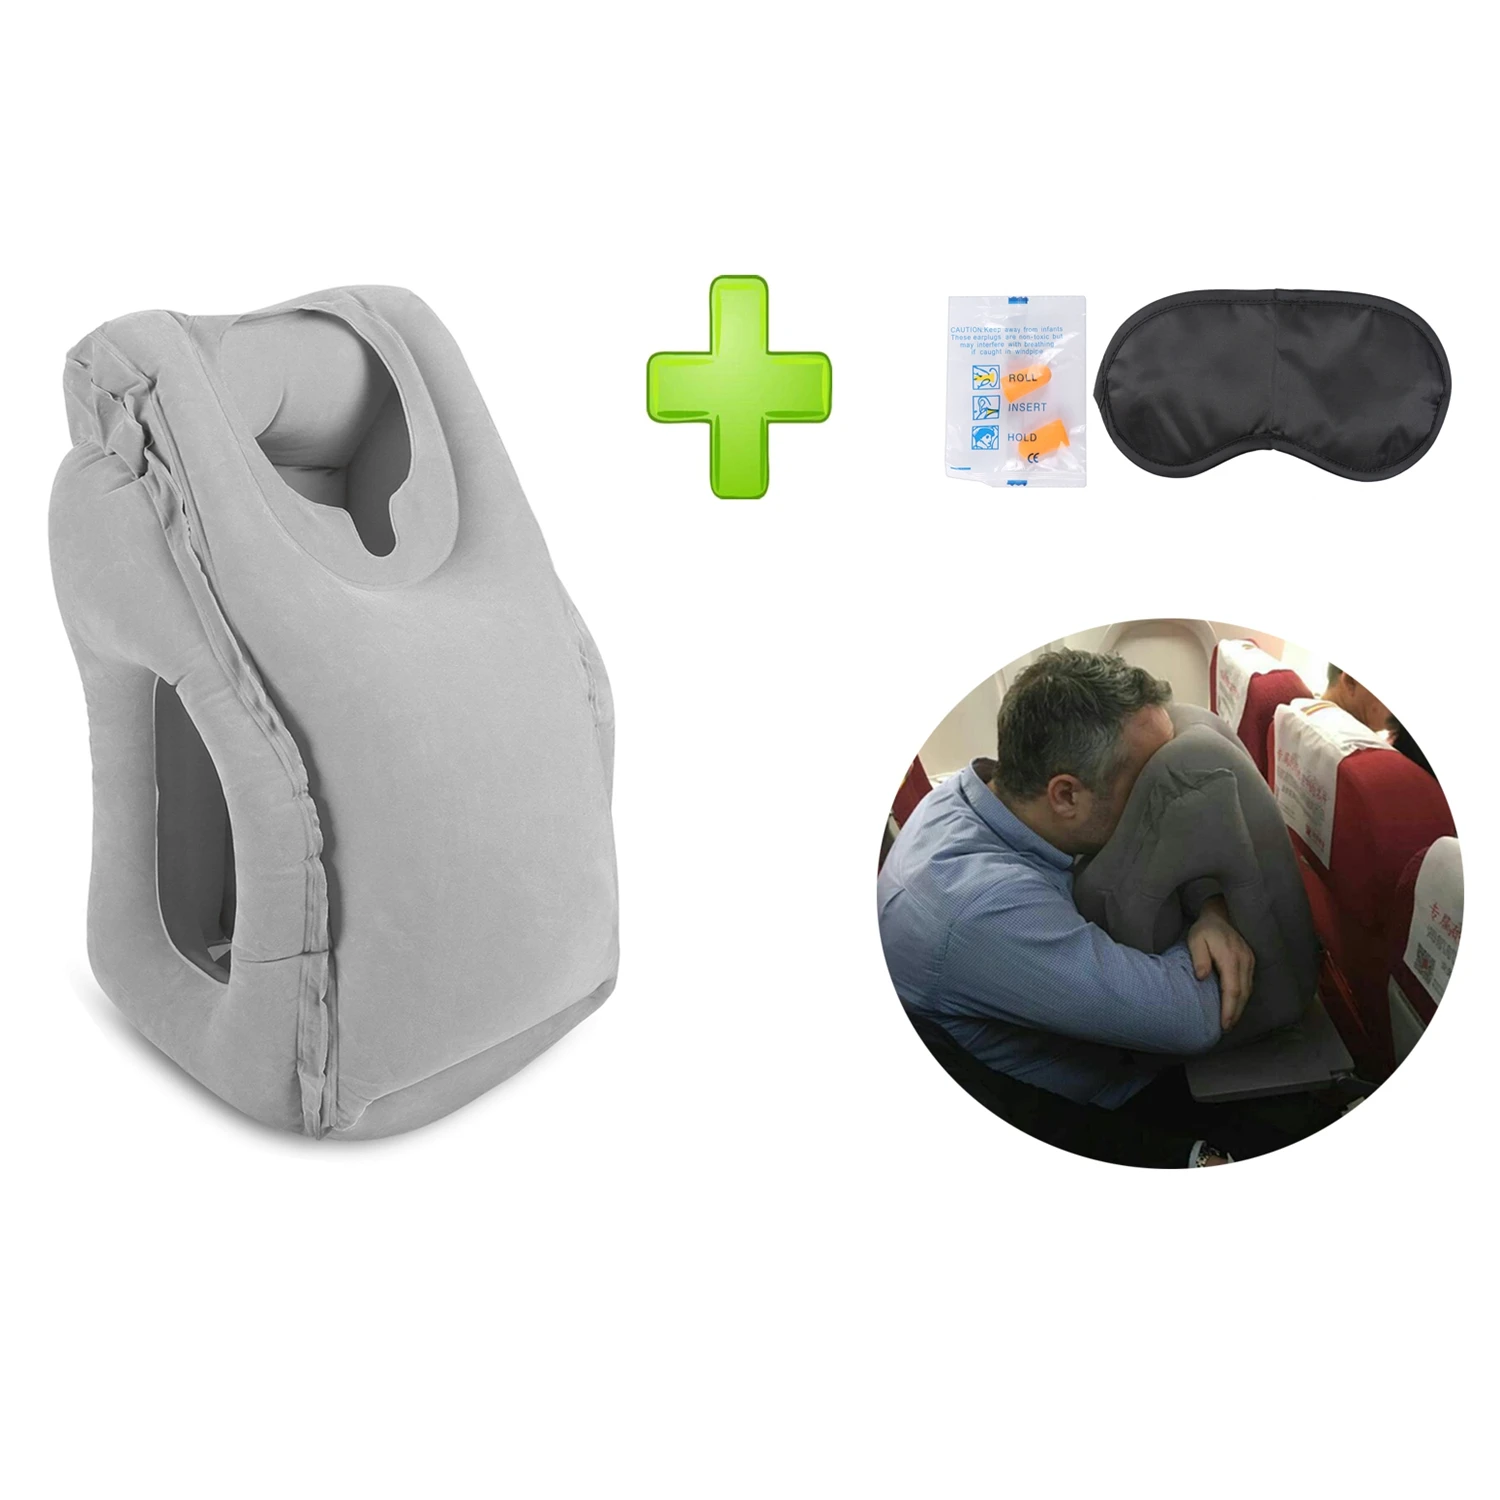 Надувные подушки для путешествий на самолёте поезде автомобиле - купить по